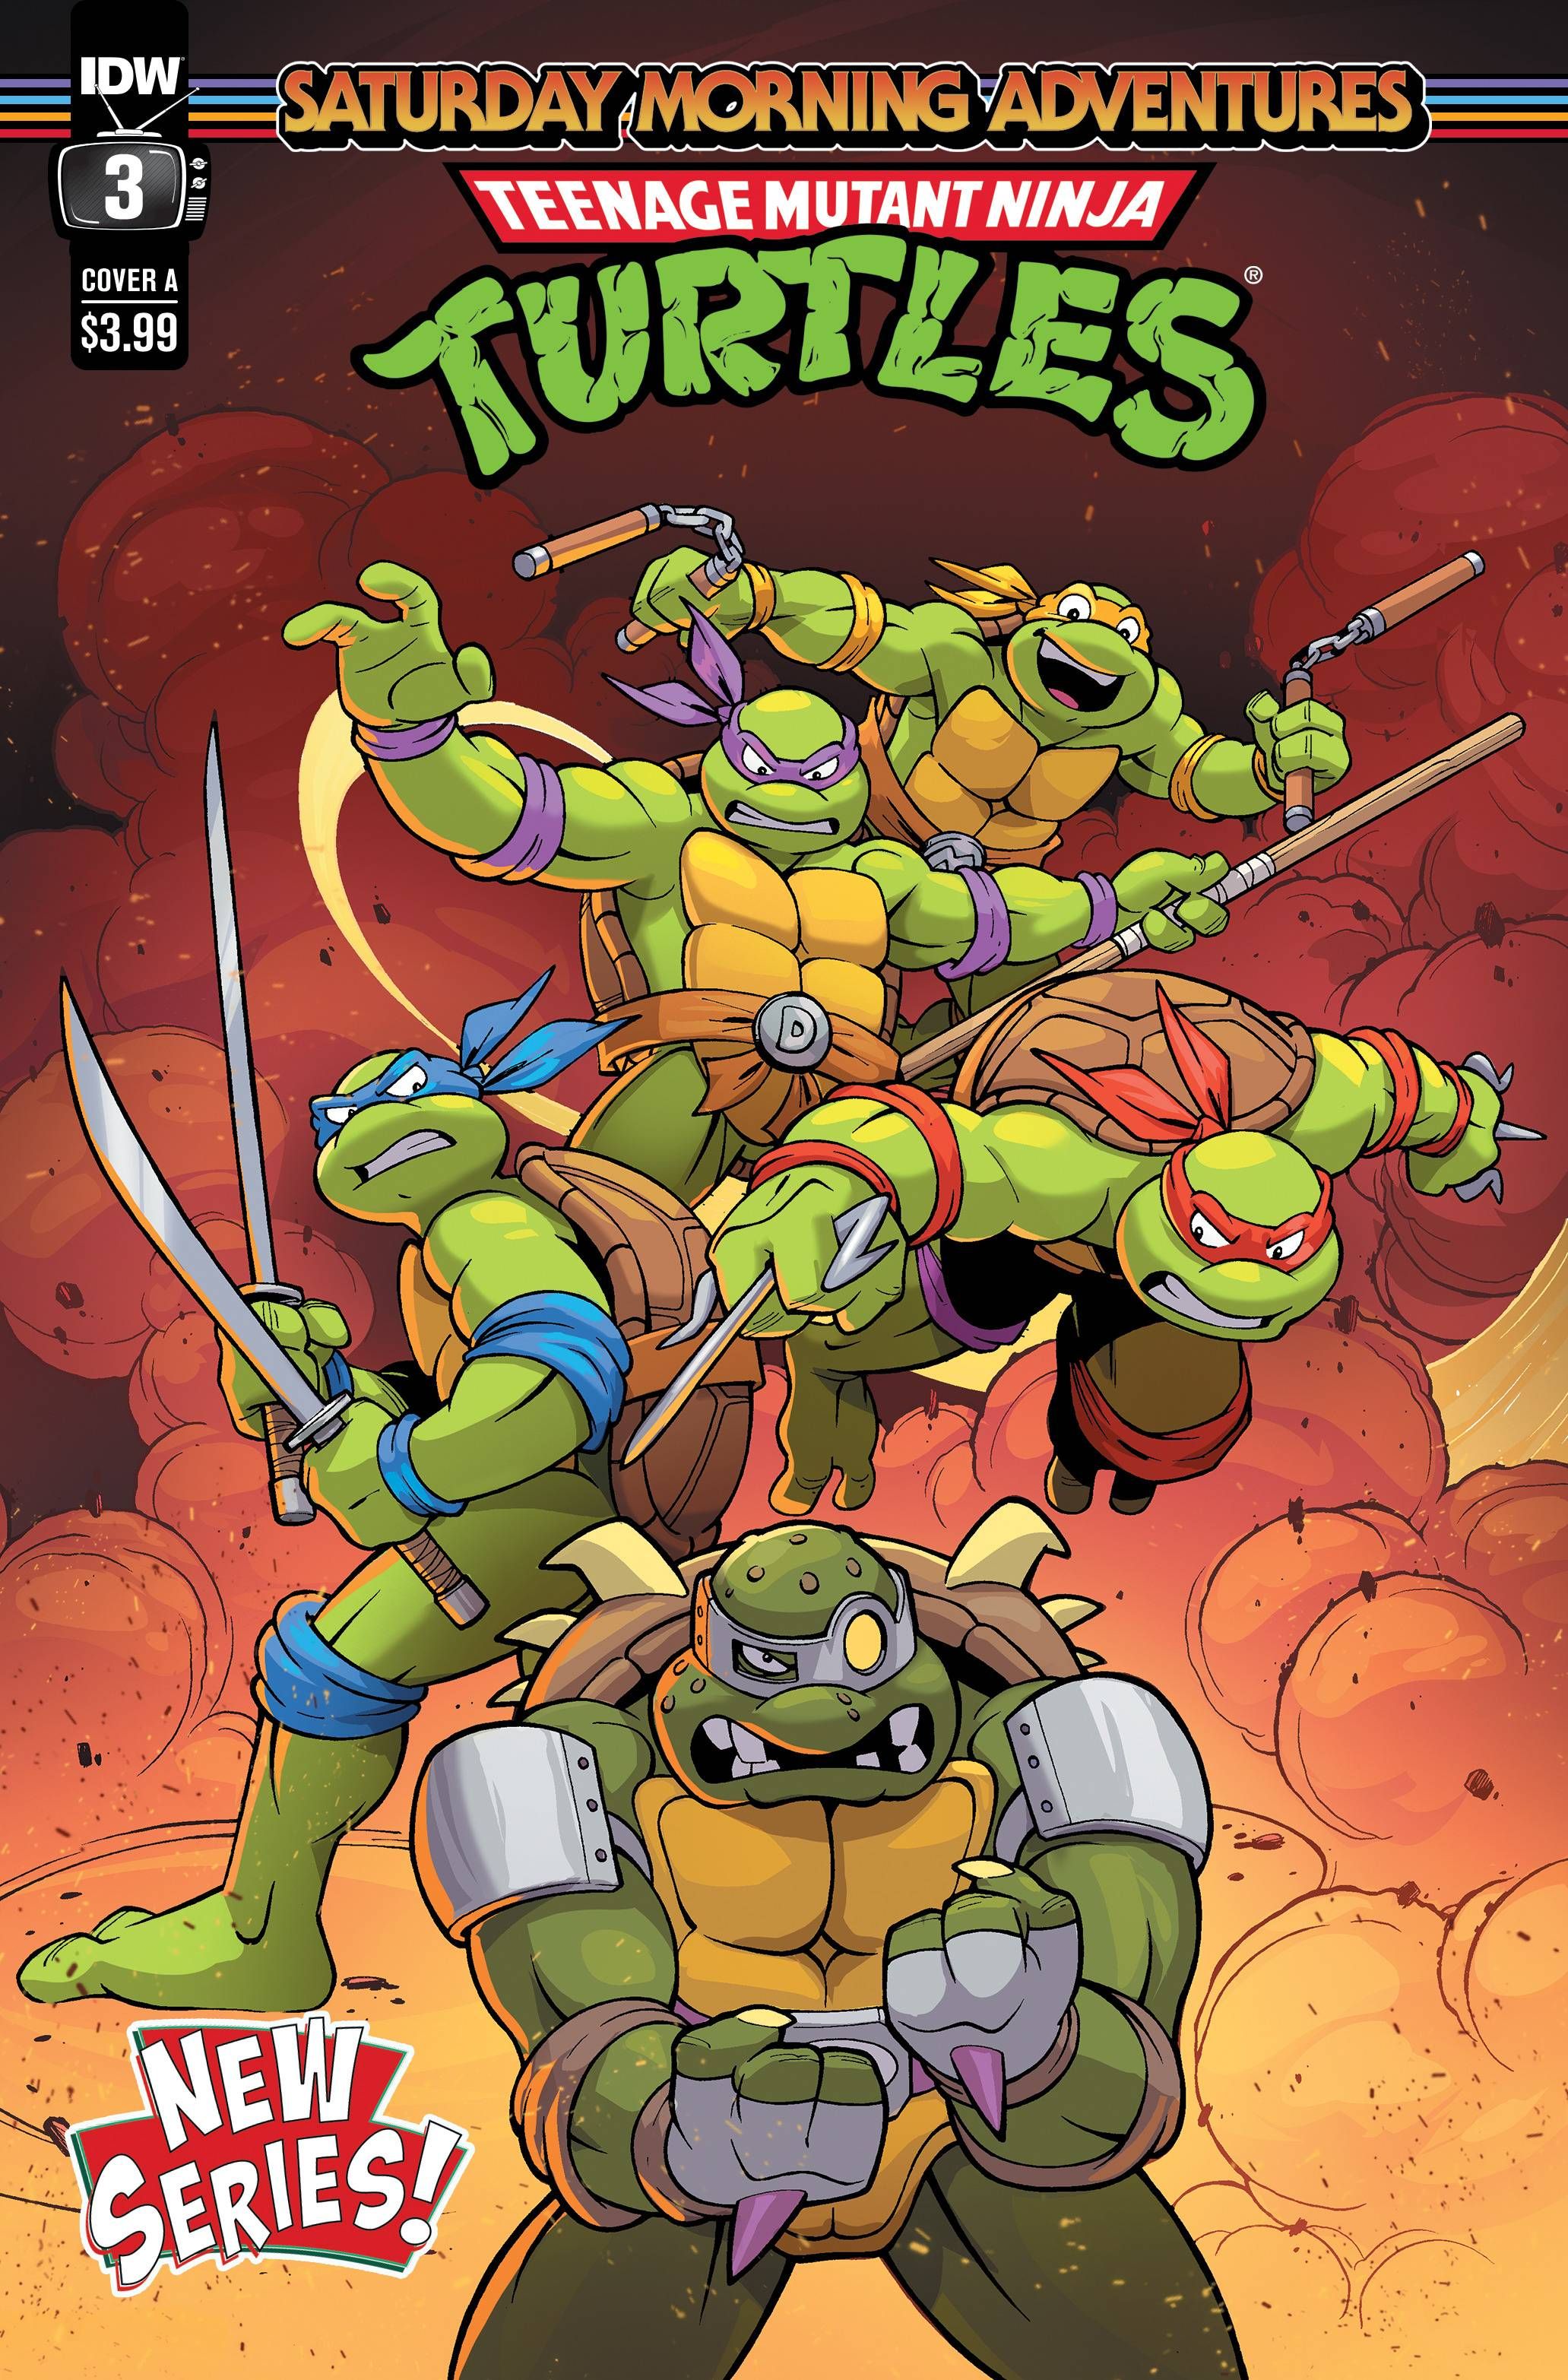 Teenage Mutant Ninja Turtles: Saturday Morning Adventures #3 Comic